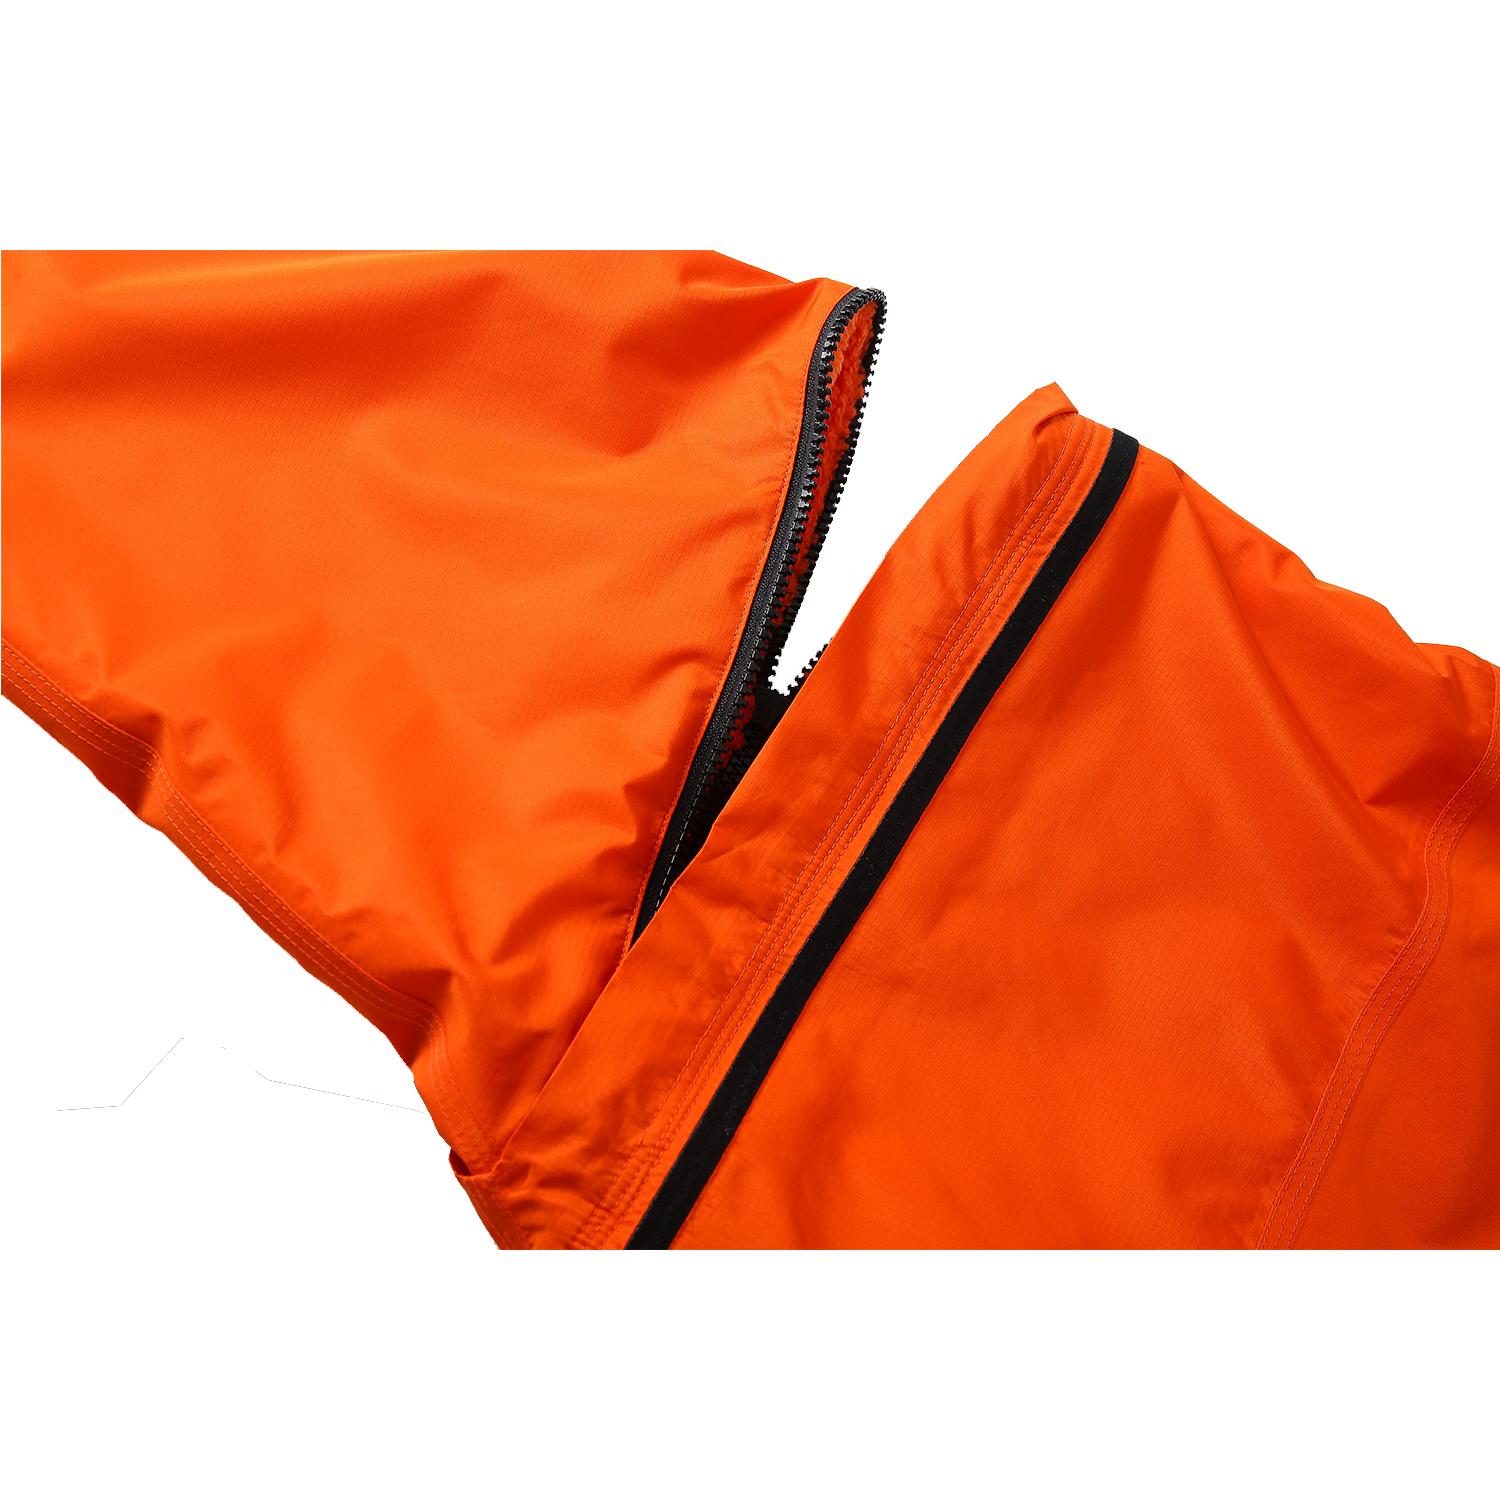 The ddipp® Sea Monster Hydro Junior - Orange